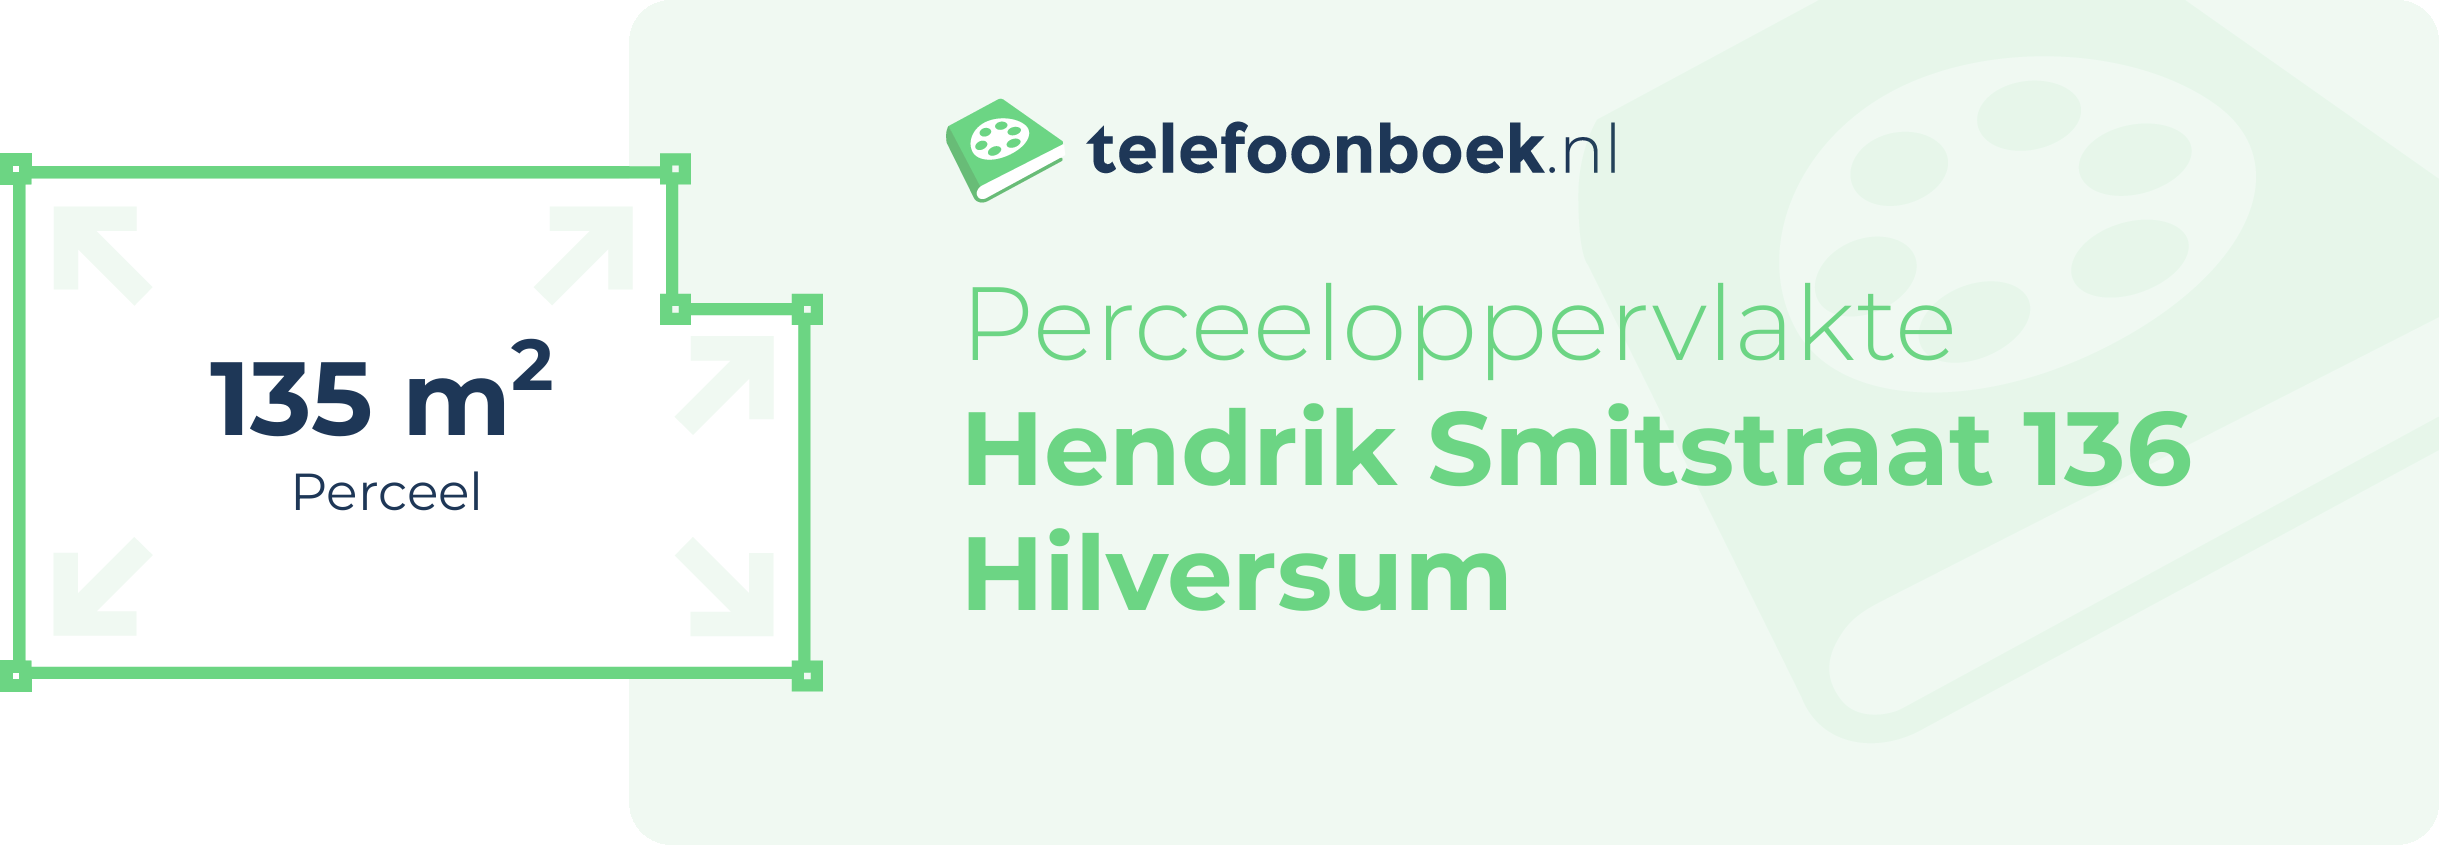 Perceeloppervlakte Hendrik Smitstraat 136 Hilversum